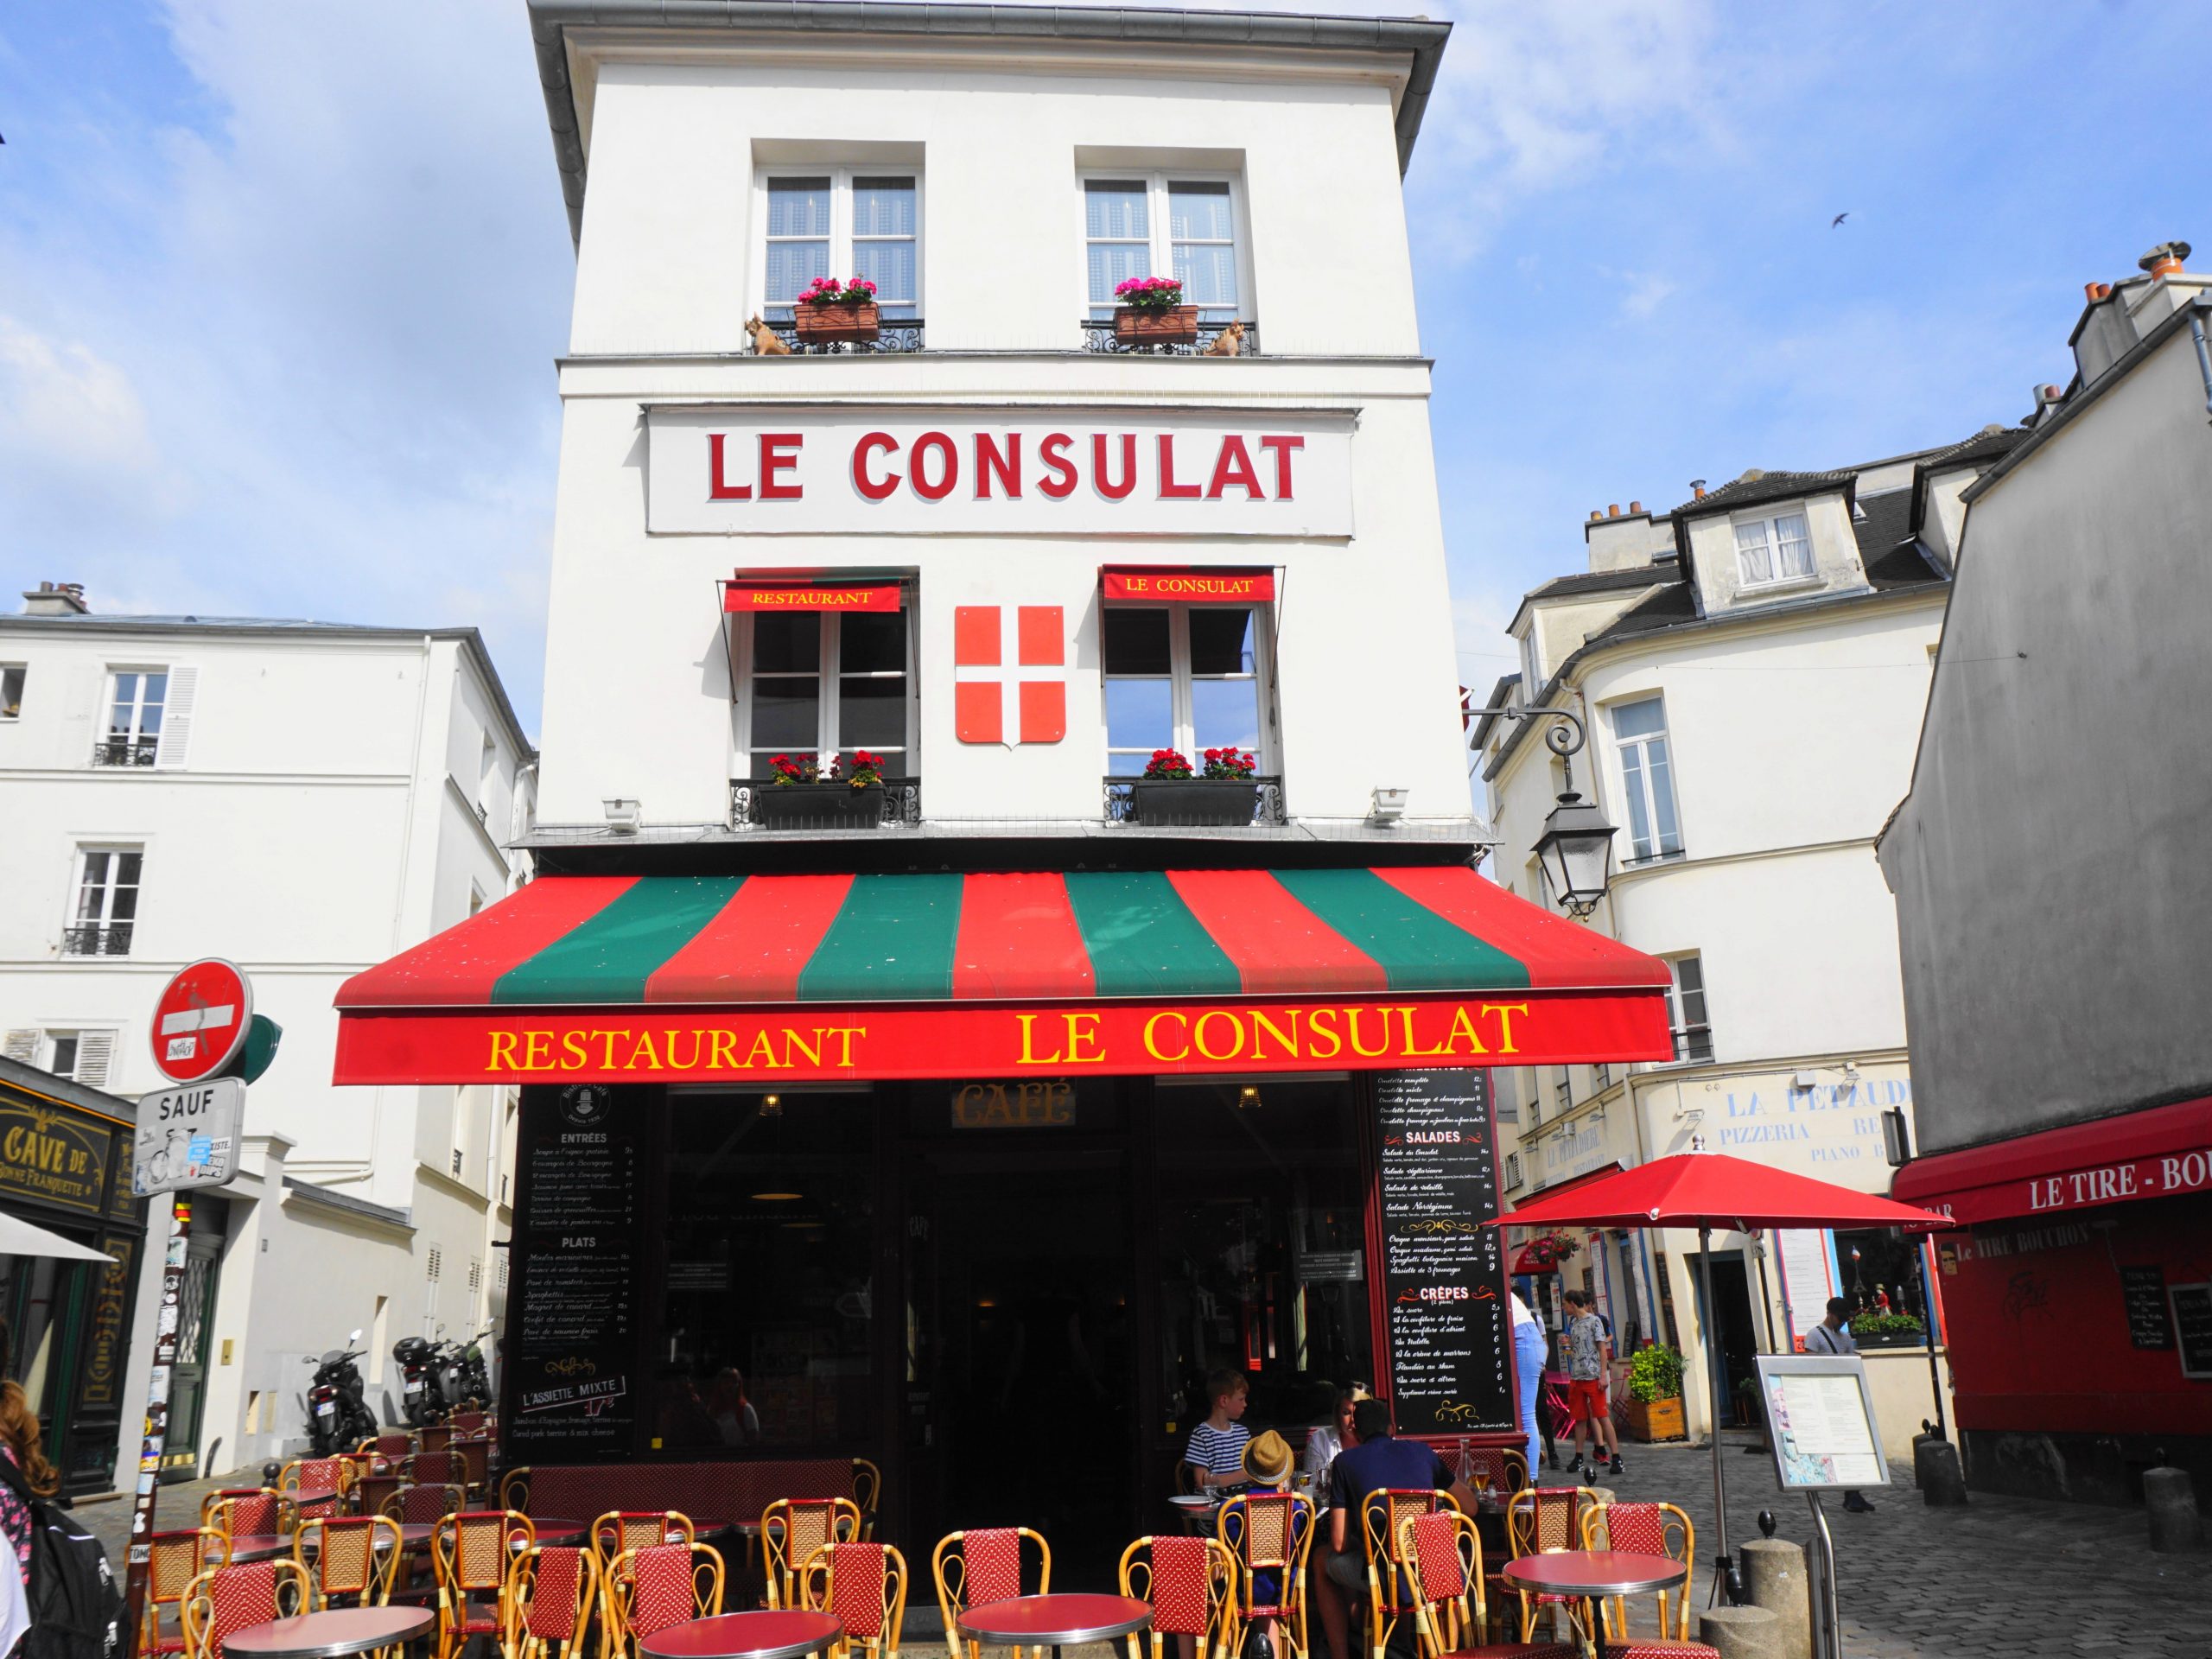 Le Consultat Restaurant in Montmartre